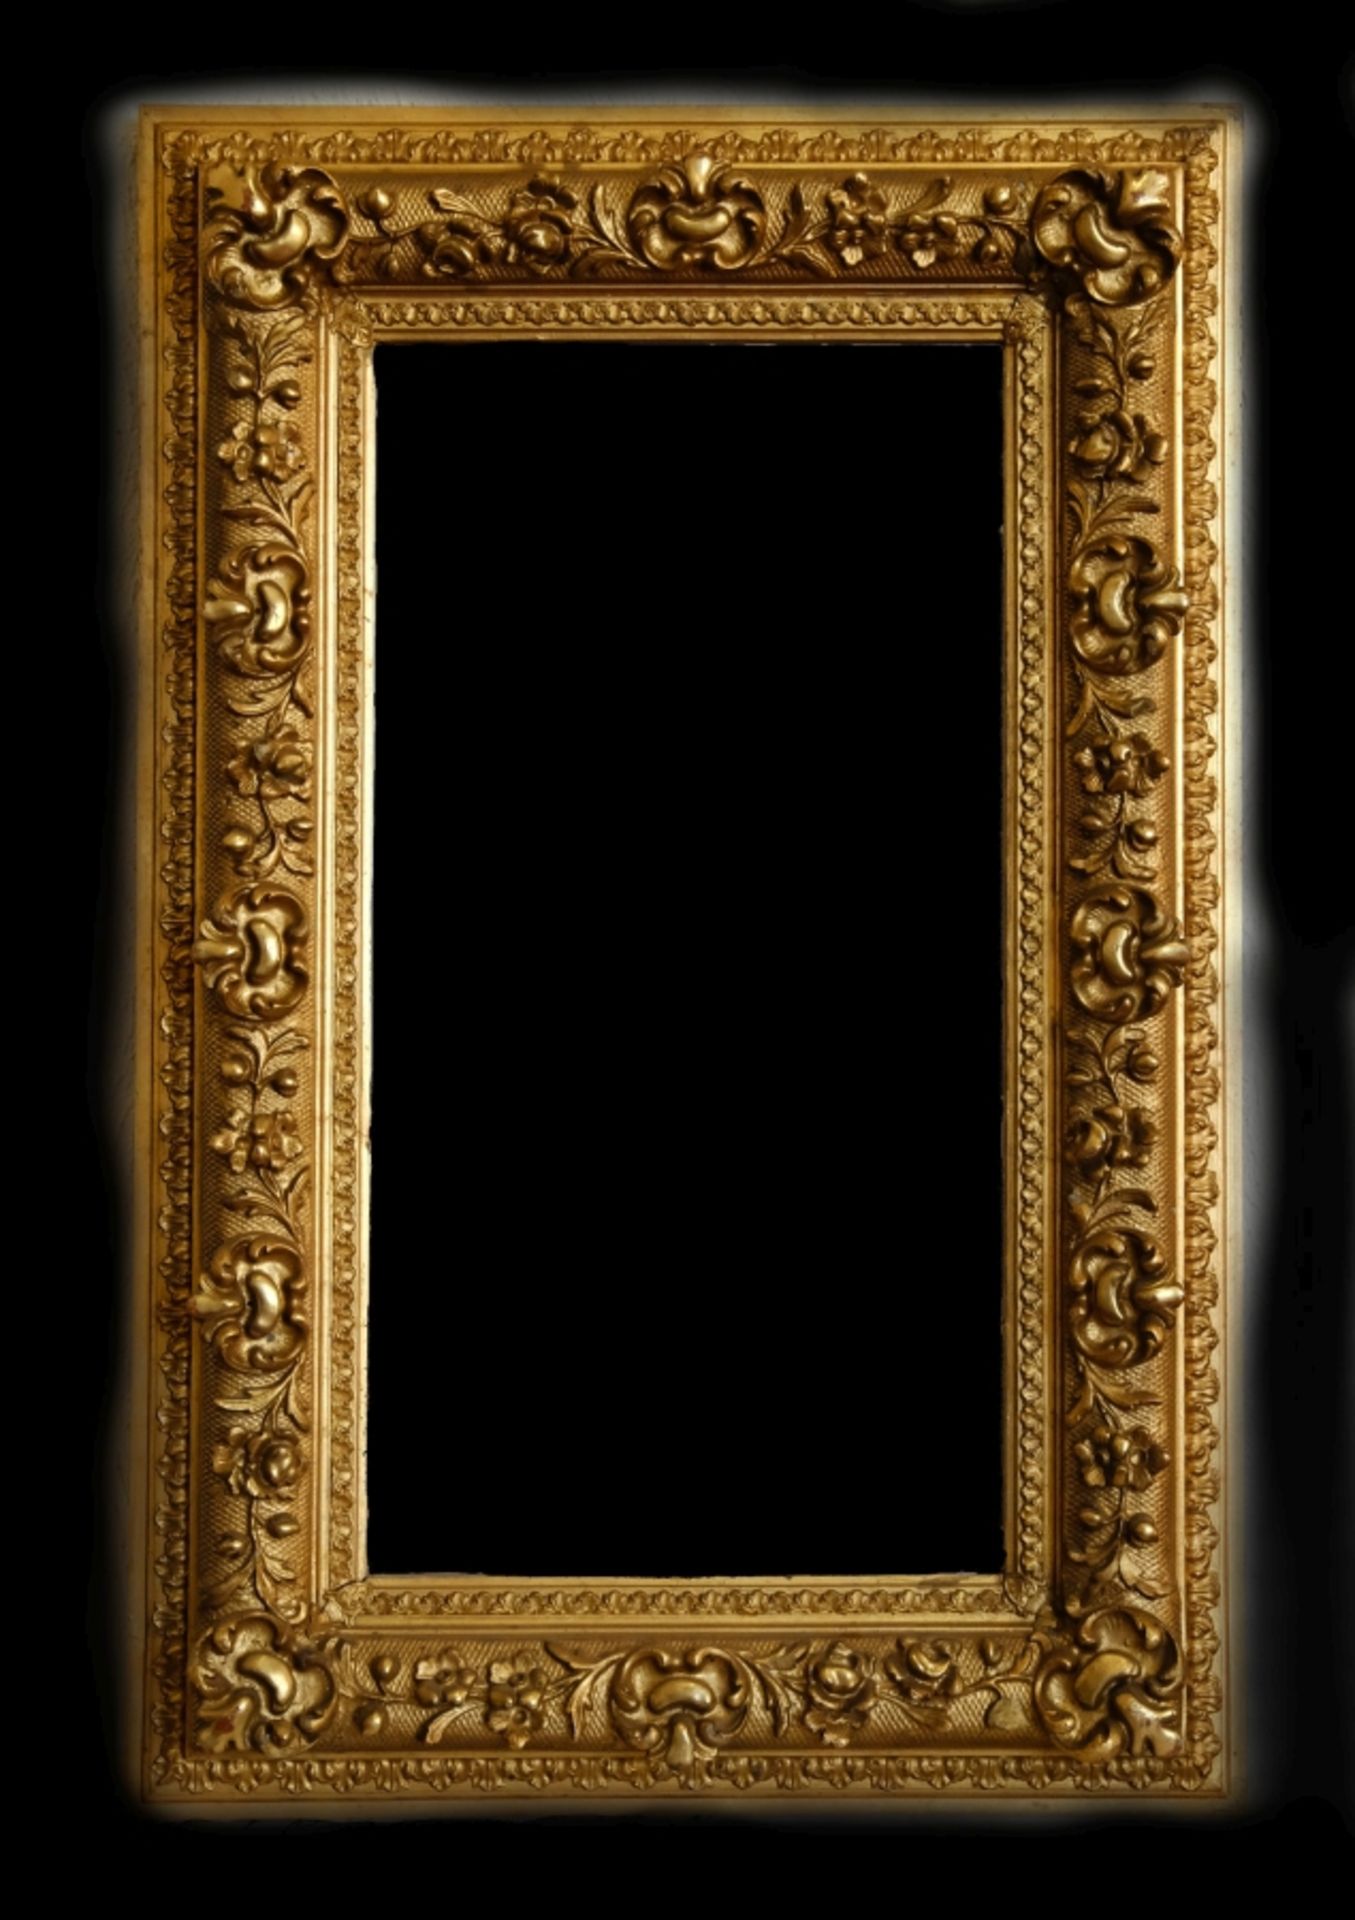 Mirror, richly decorated gold frame, plaster ornaments, genuine oil-gilt, Switzerland around 1900, 